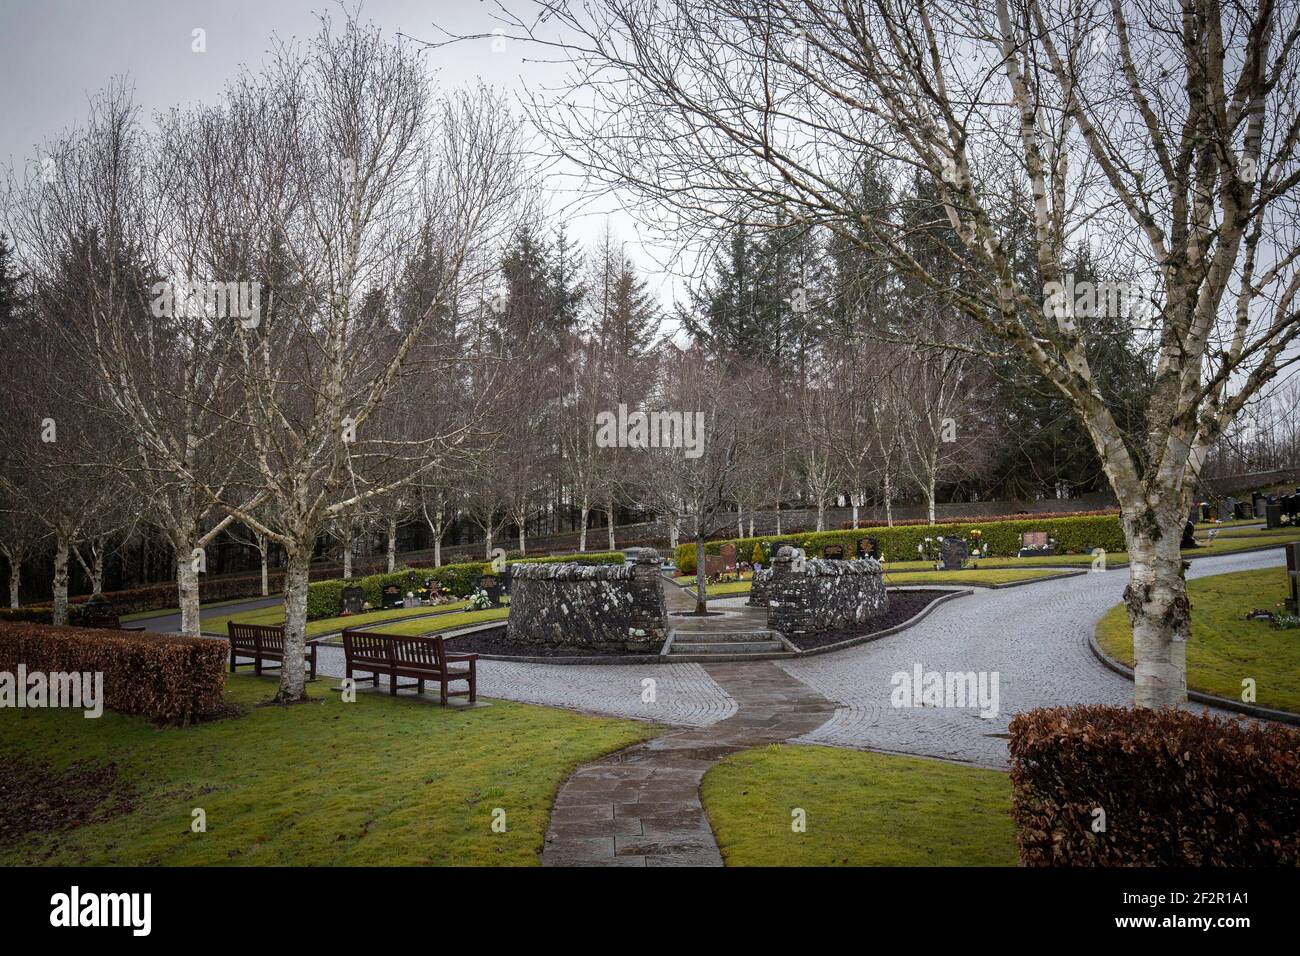 Der Garten der Erinnerung auf dem Friedhof Dunblane vor dem 25th. Jahrestag des Massakers von Dunblane am Samstag. Bilddatum: Freitag, 12. März 2021. Stockfoto